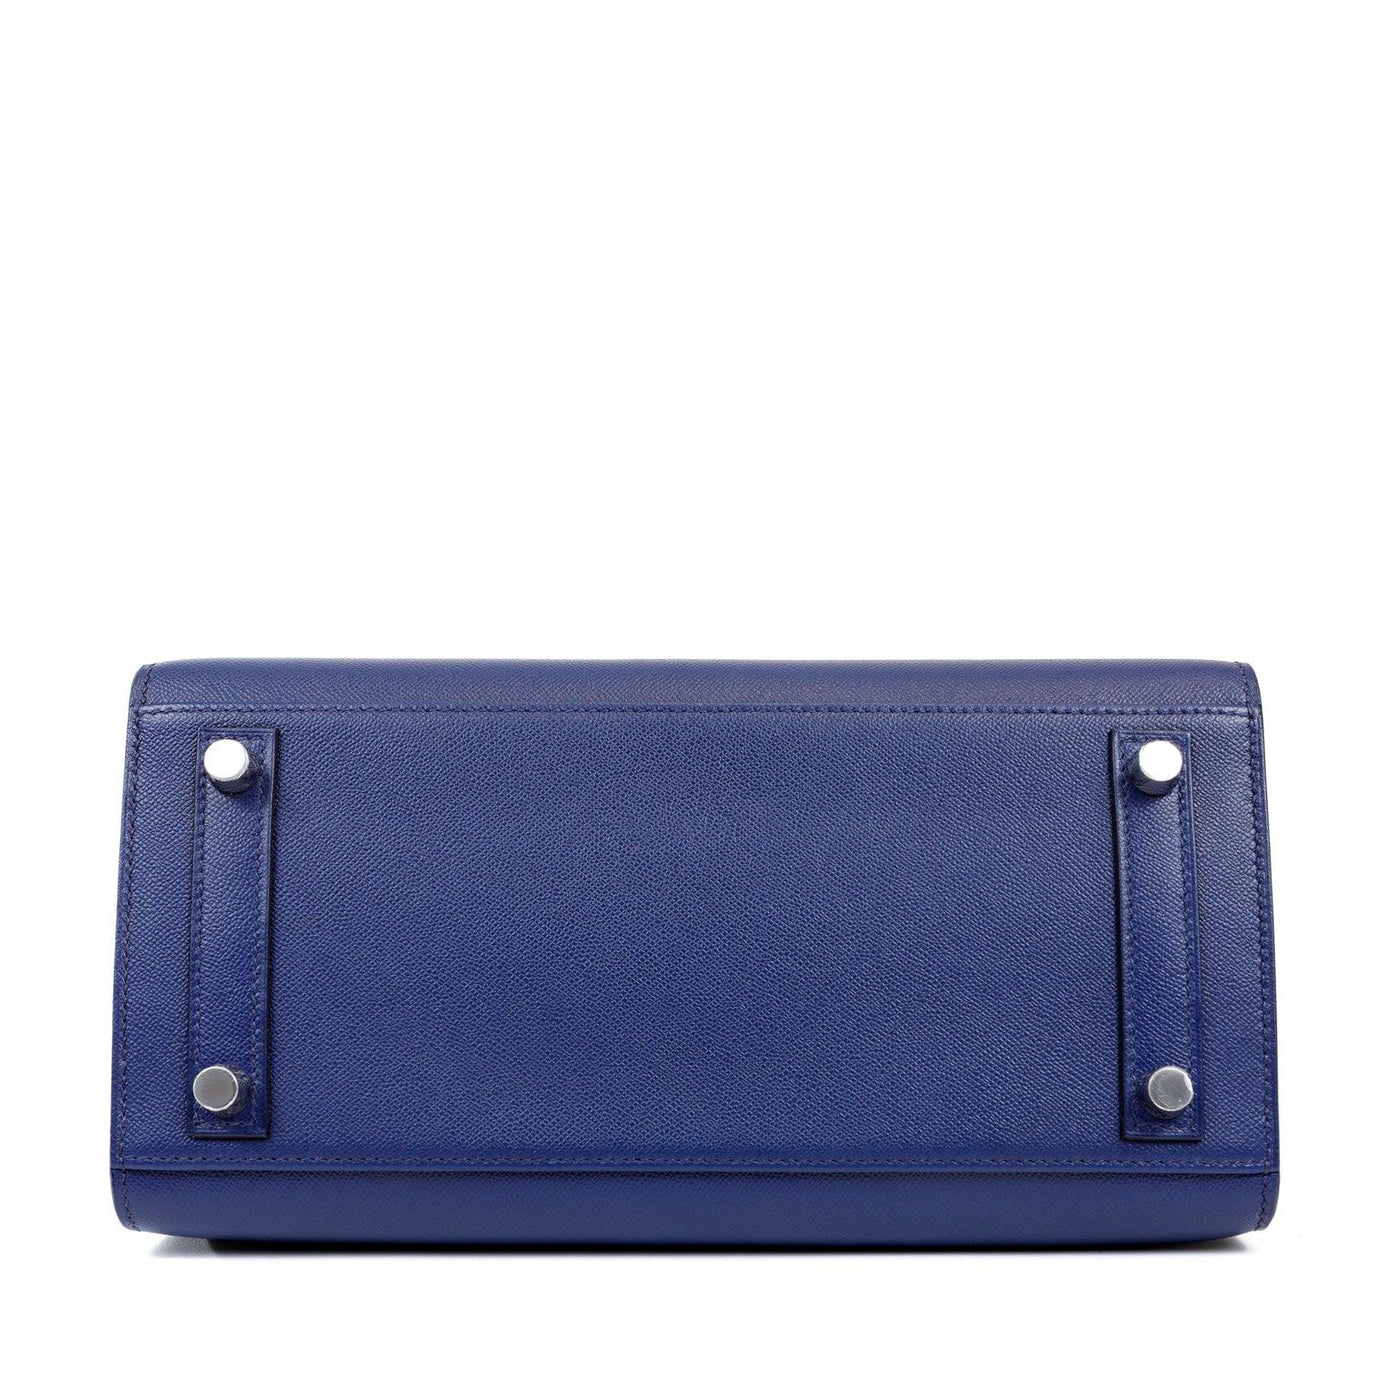 Hermès 25cm Navy Blue Epsom Sellier Birkin w/ Palladium Hardware - Only Authentics